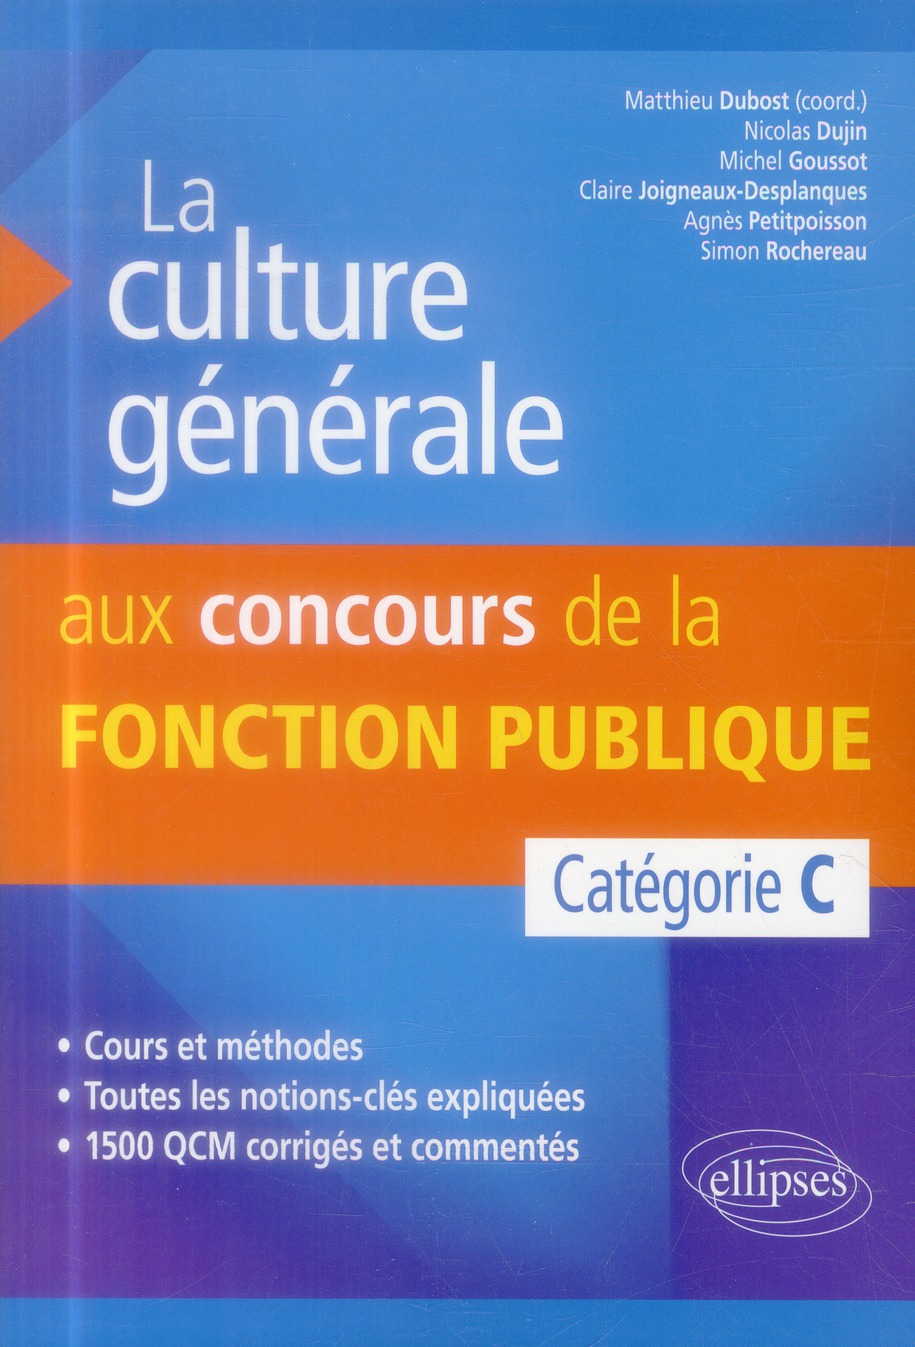 LA CULTURE GENERALE AUX CONCOURS DE LA FONCTION PUBLIQUE DE CATEGORIE C